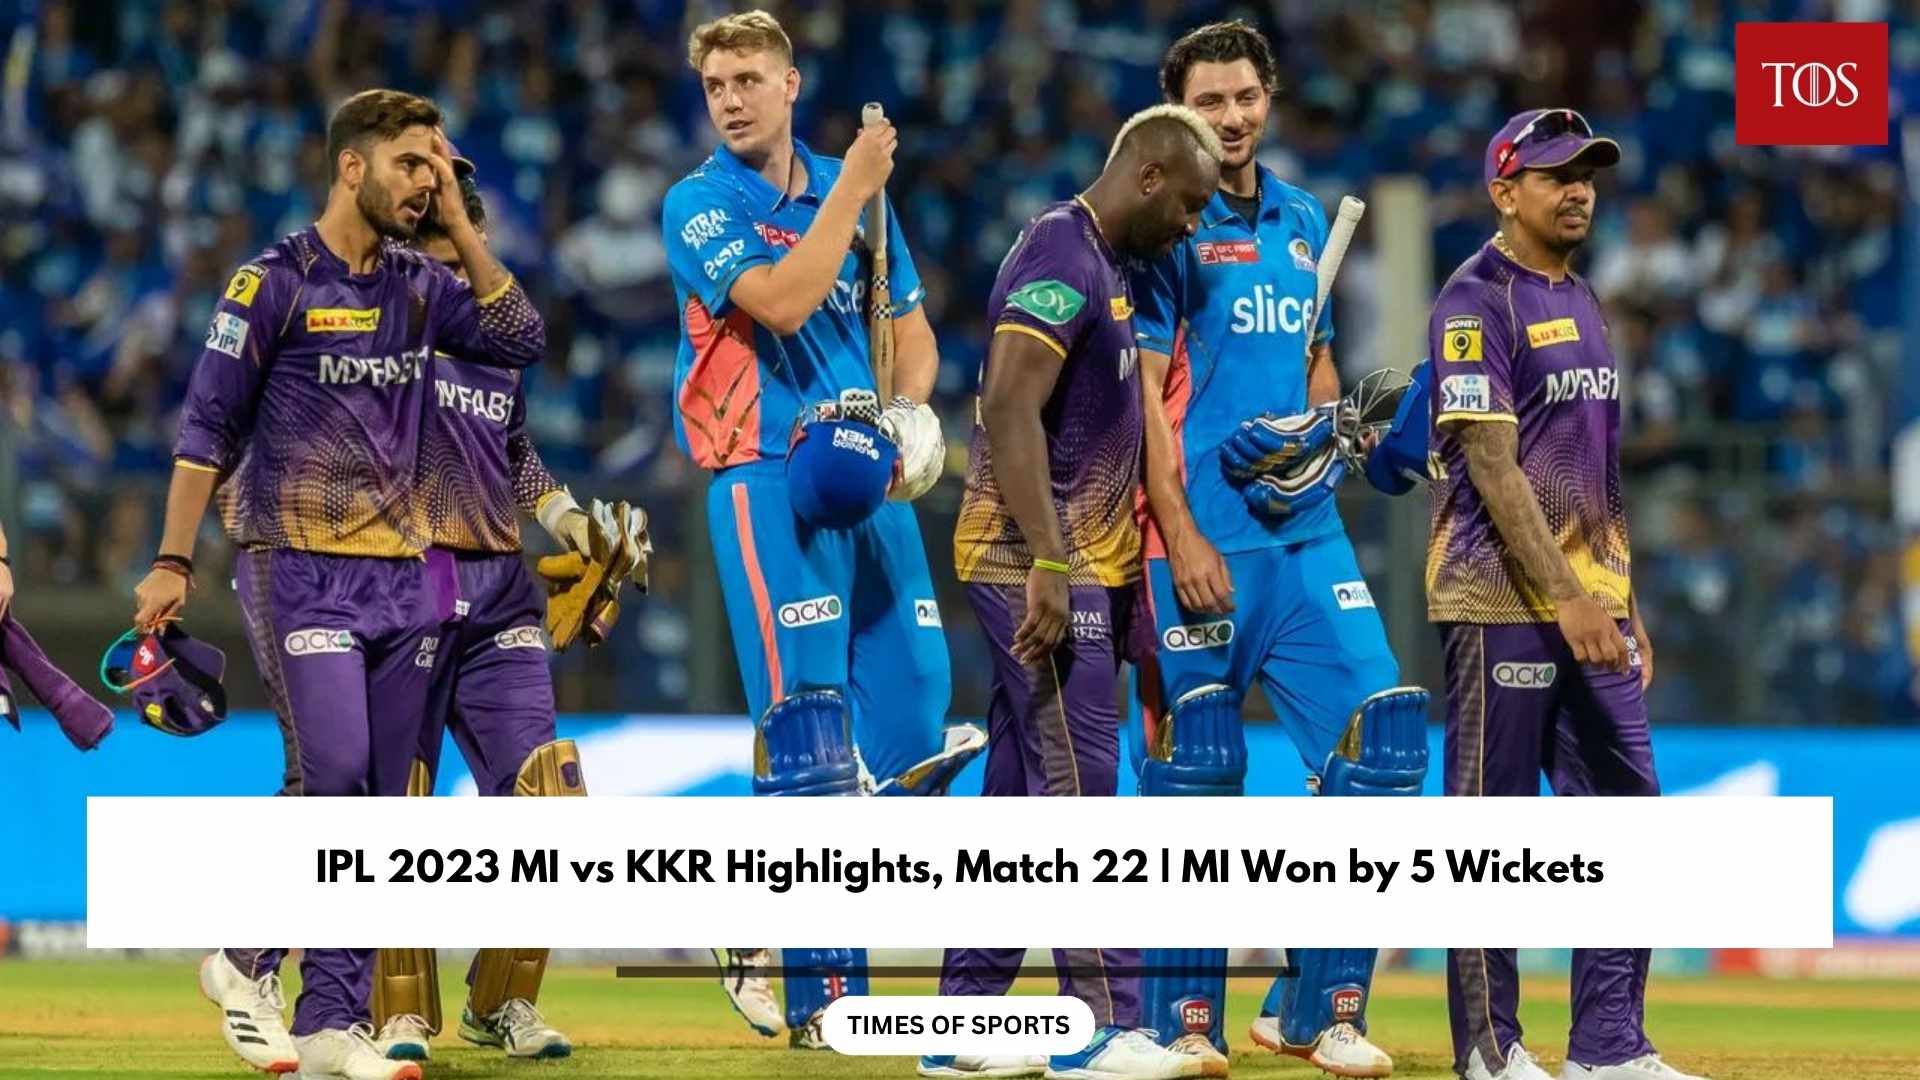 IPL 2023 MI vs KKR Highlights